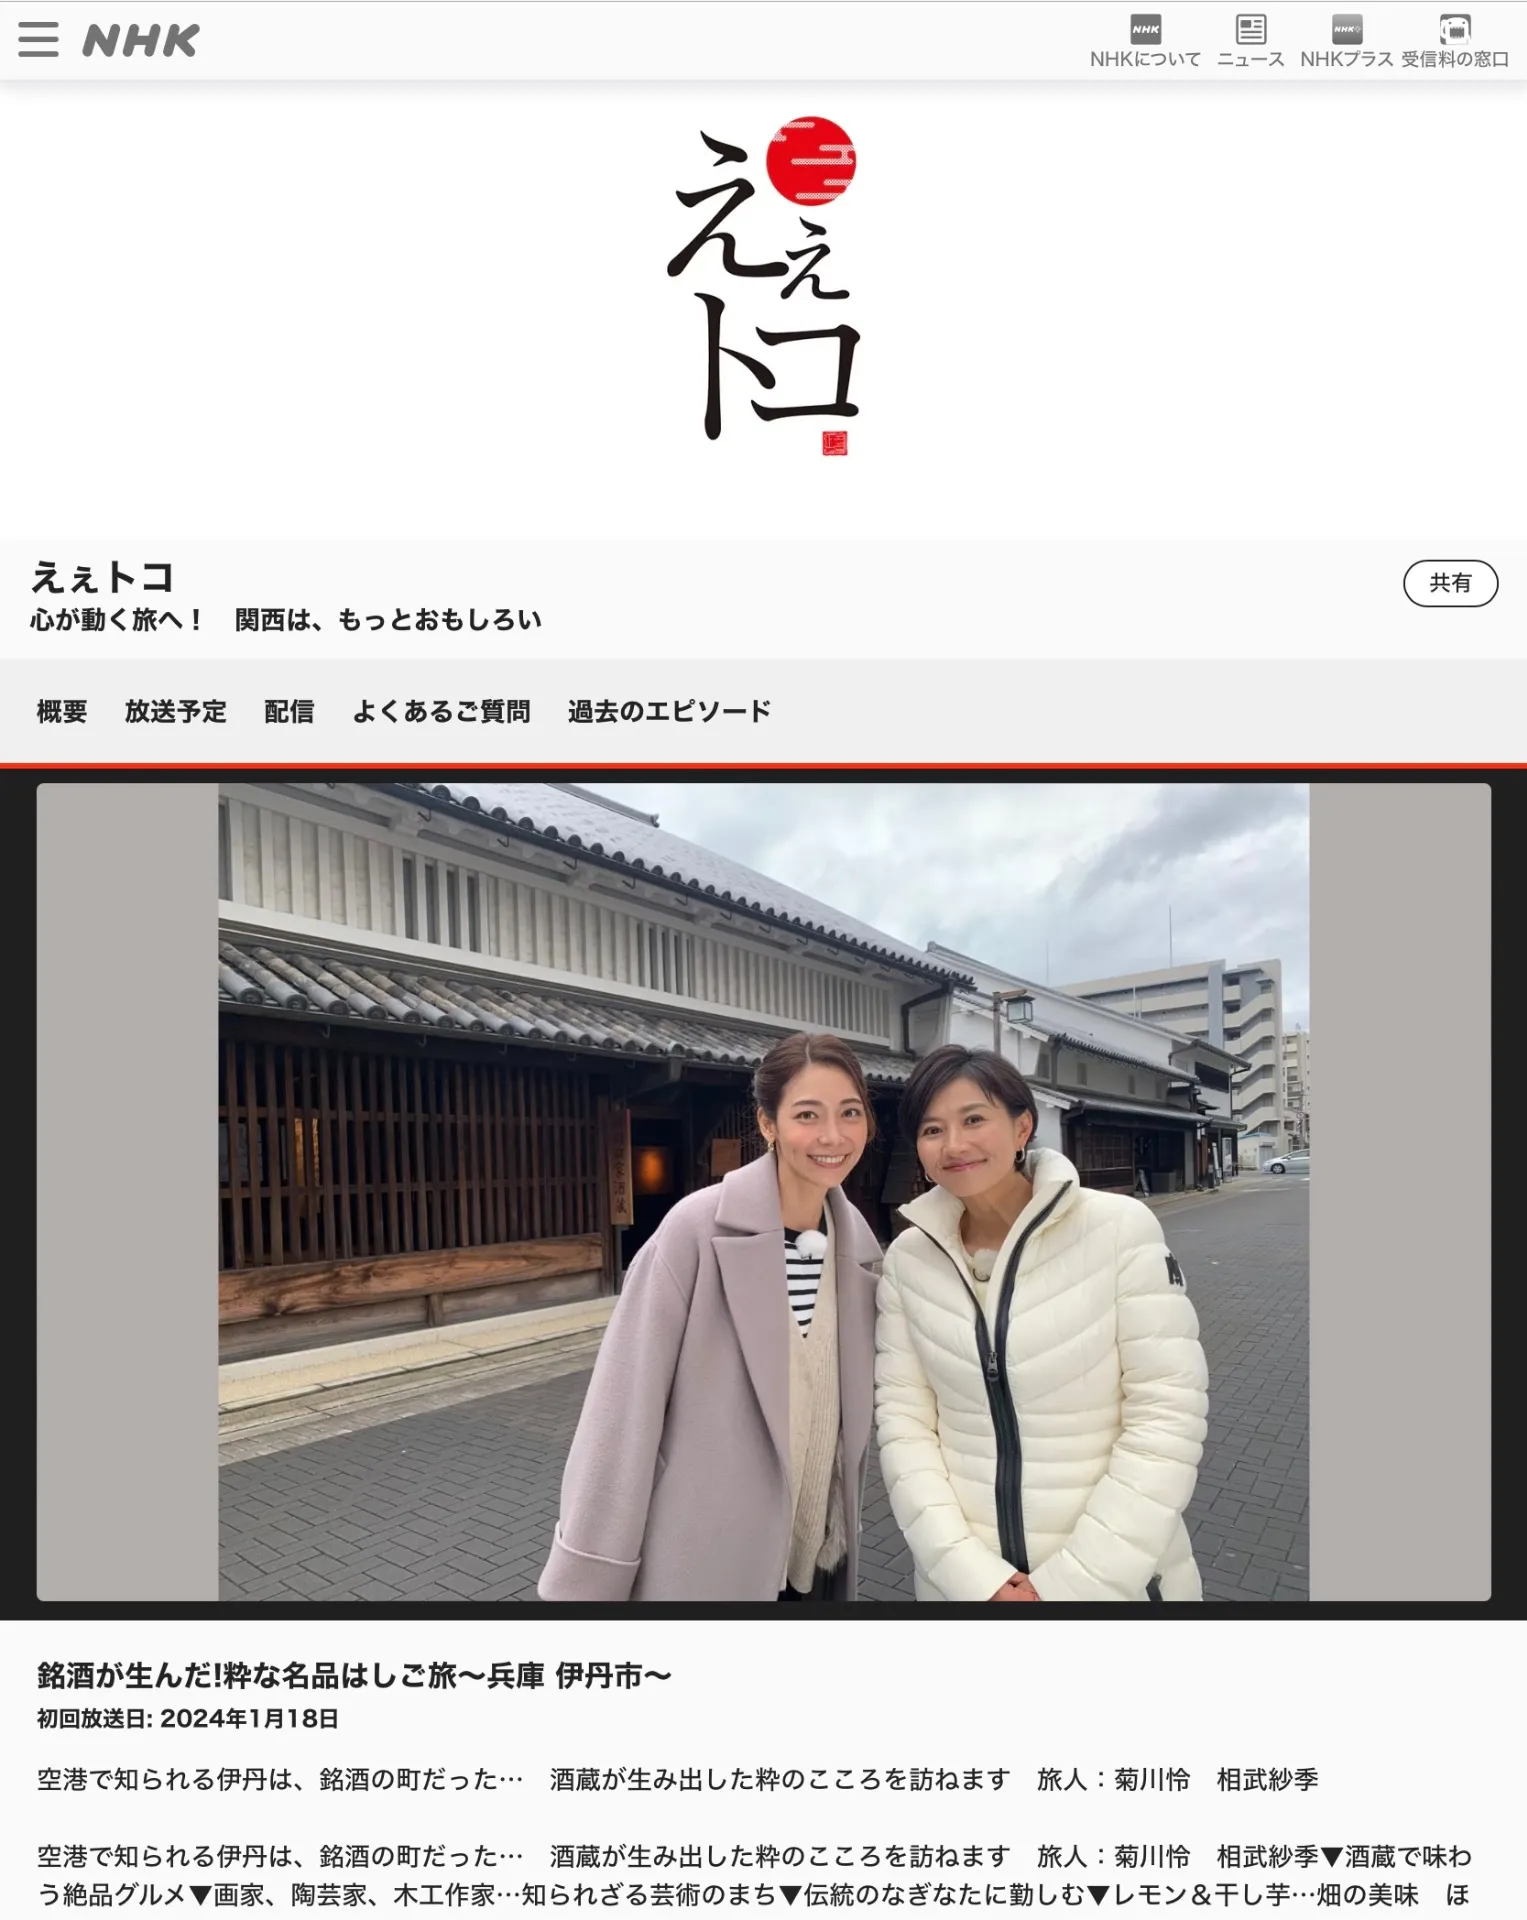 1月18日 NHK「えぇトコ」に鉱物カフェ出演